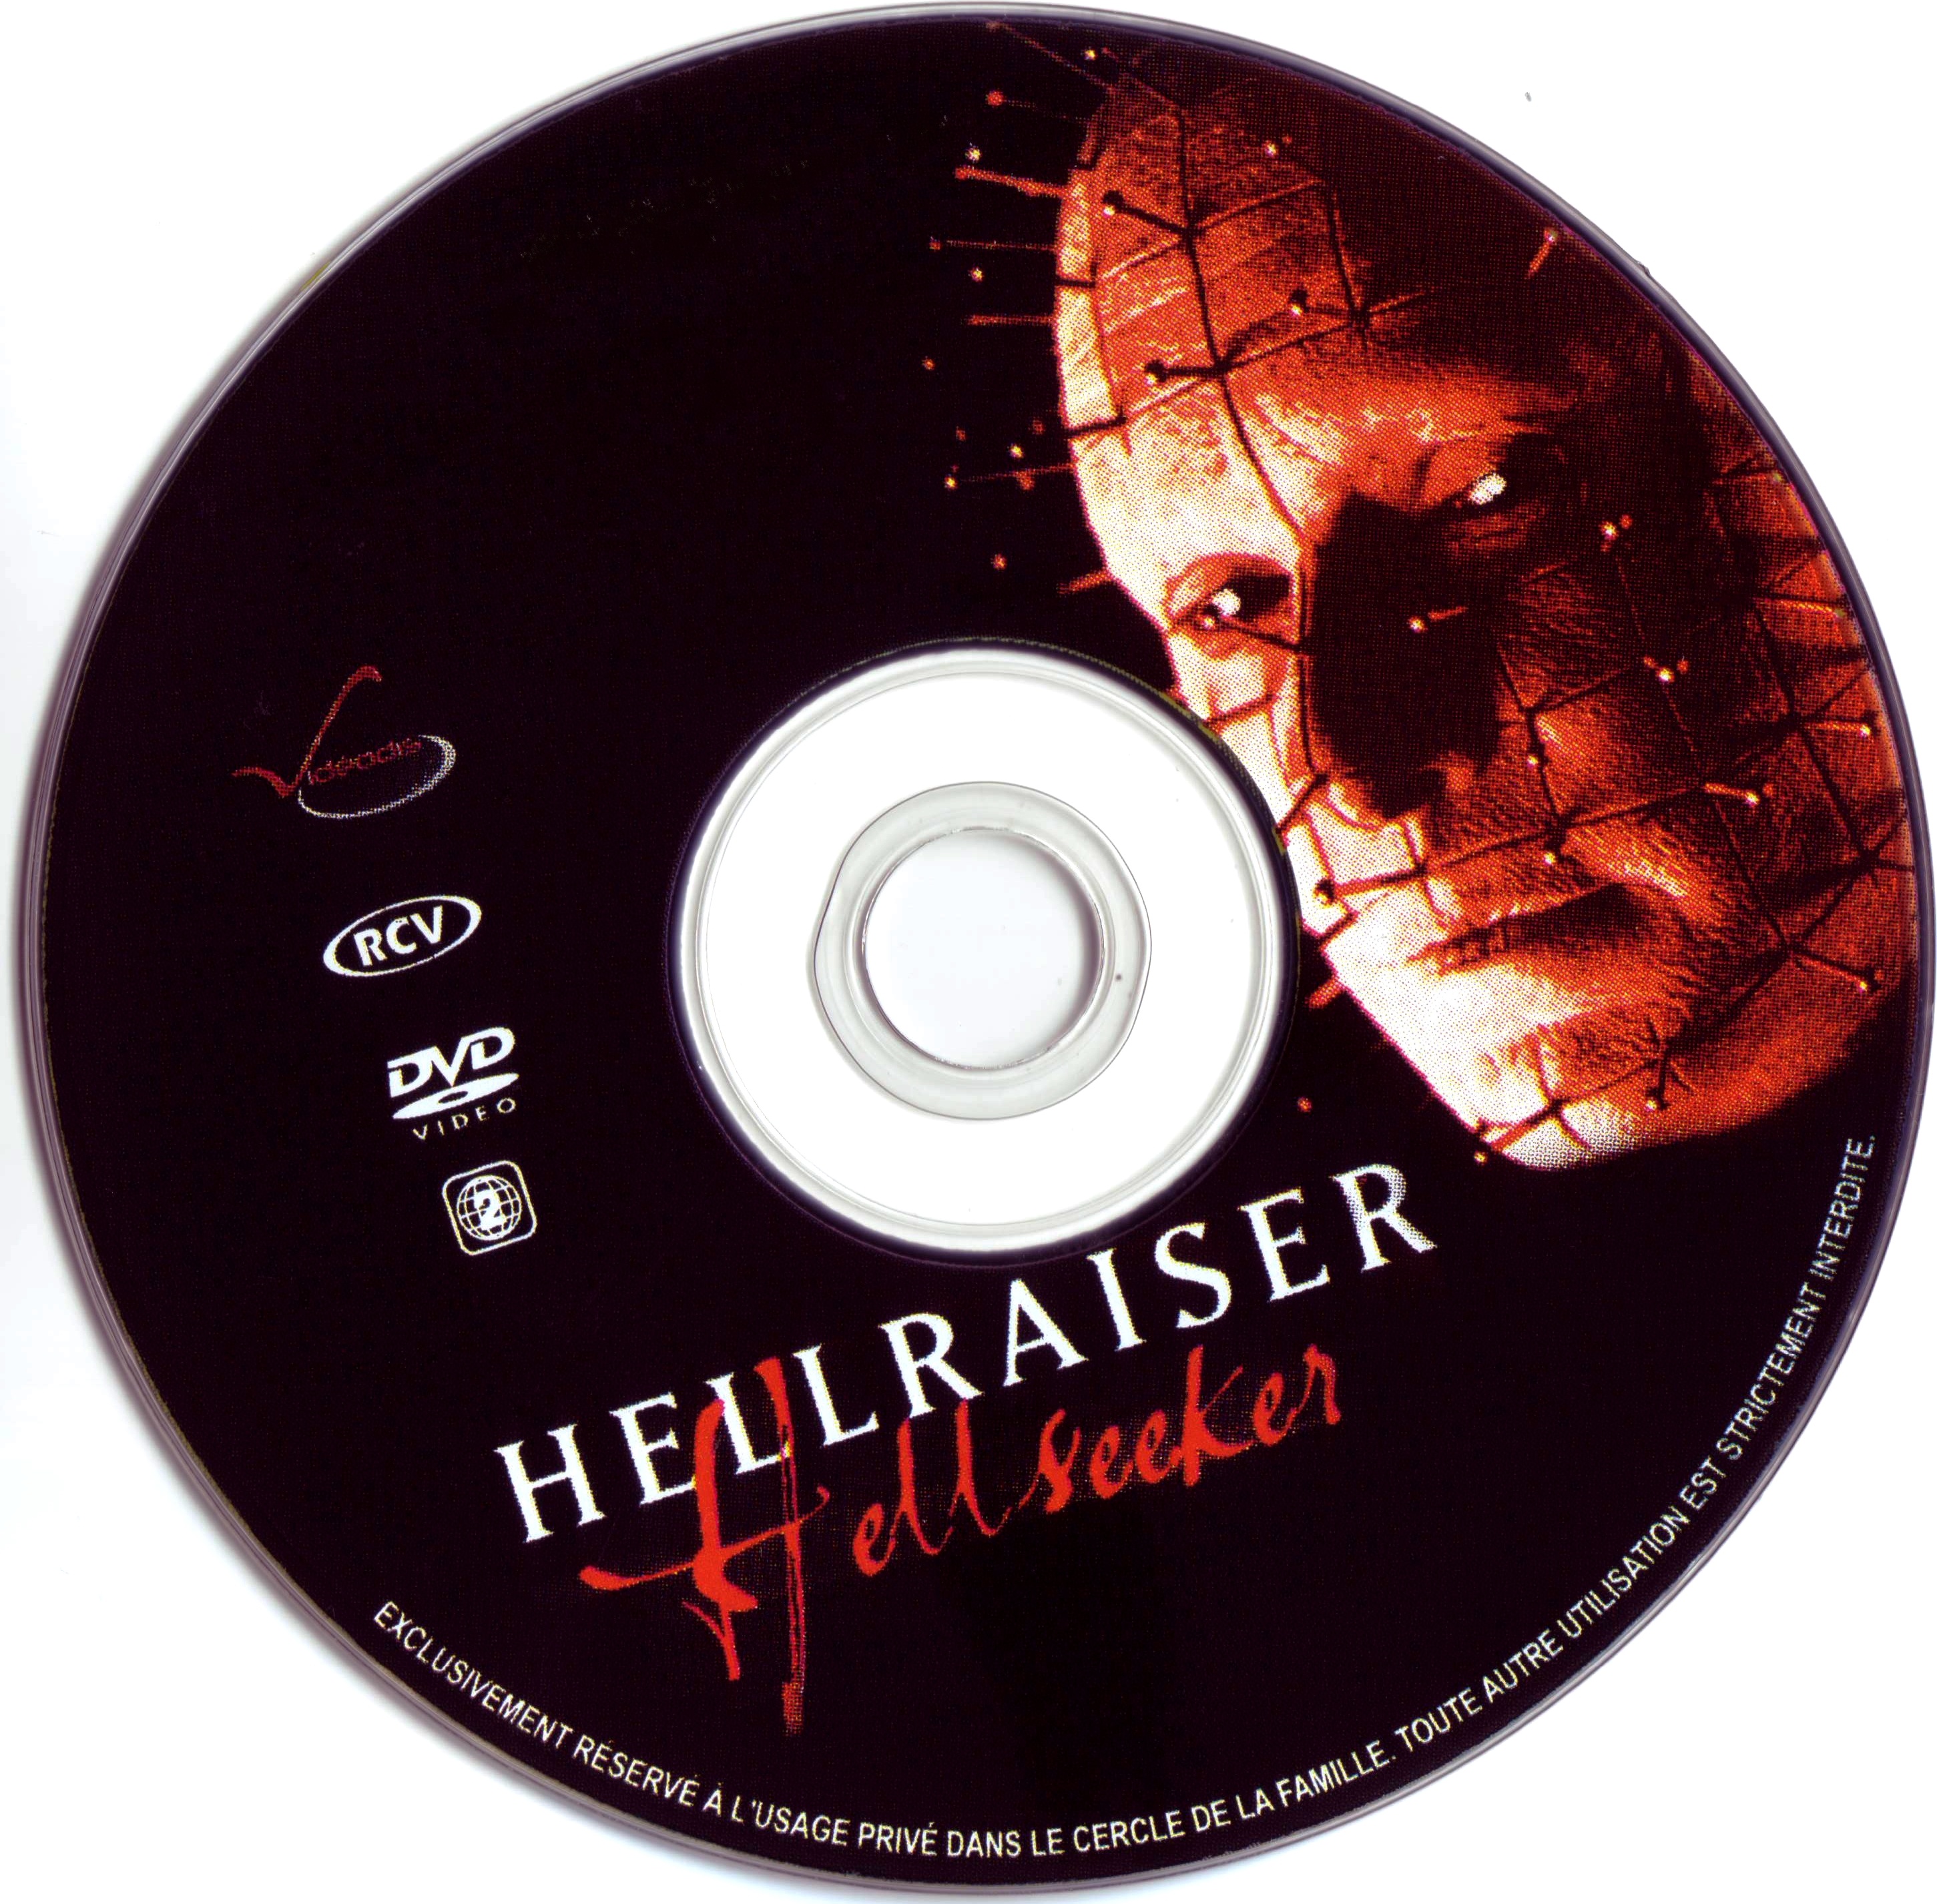 Hellraiser Hellseeker